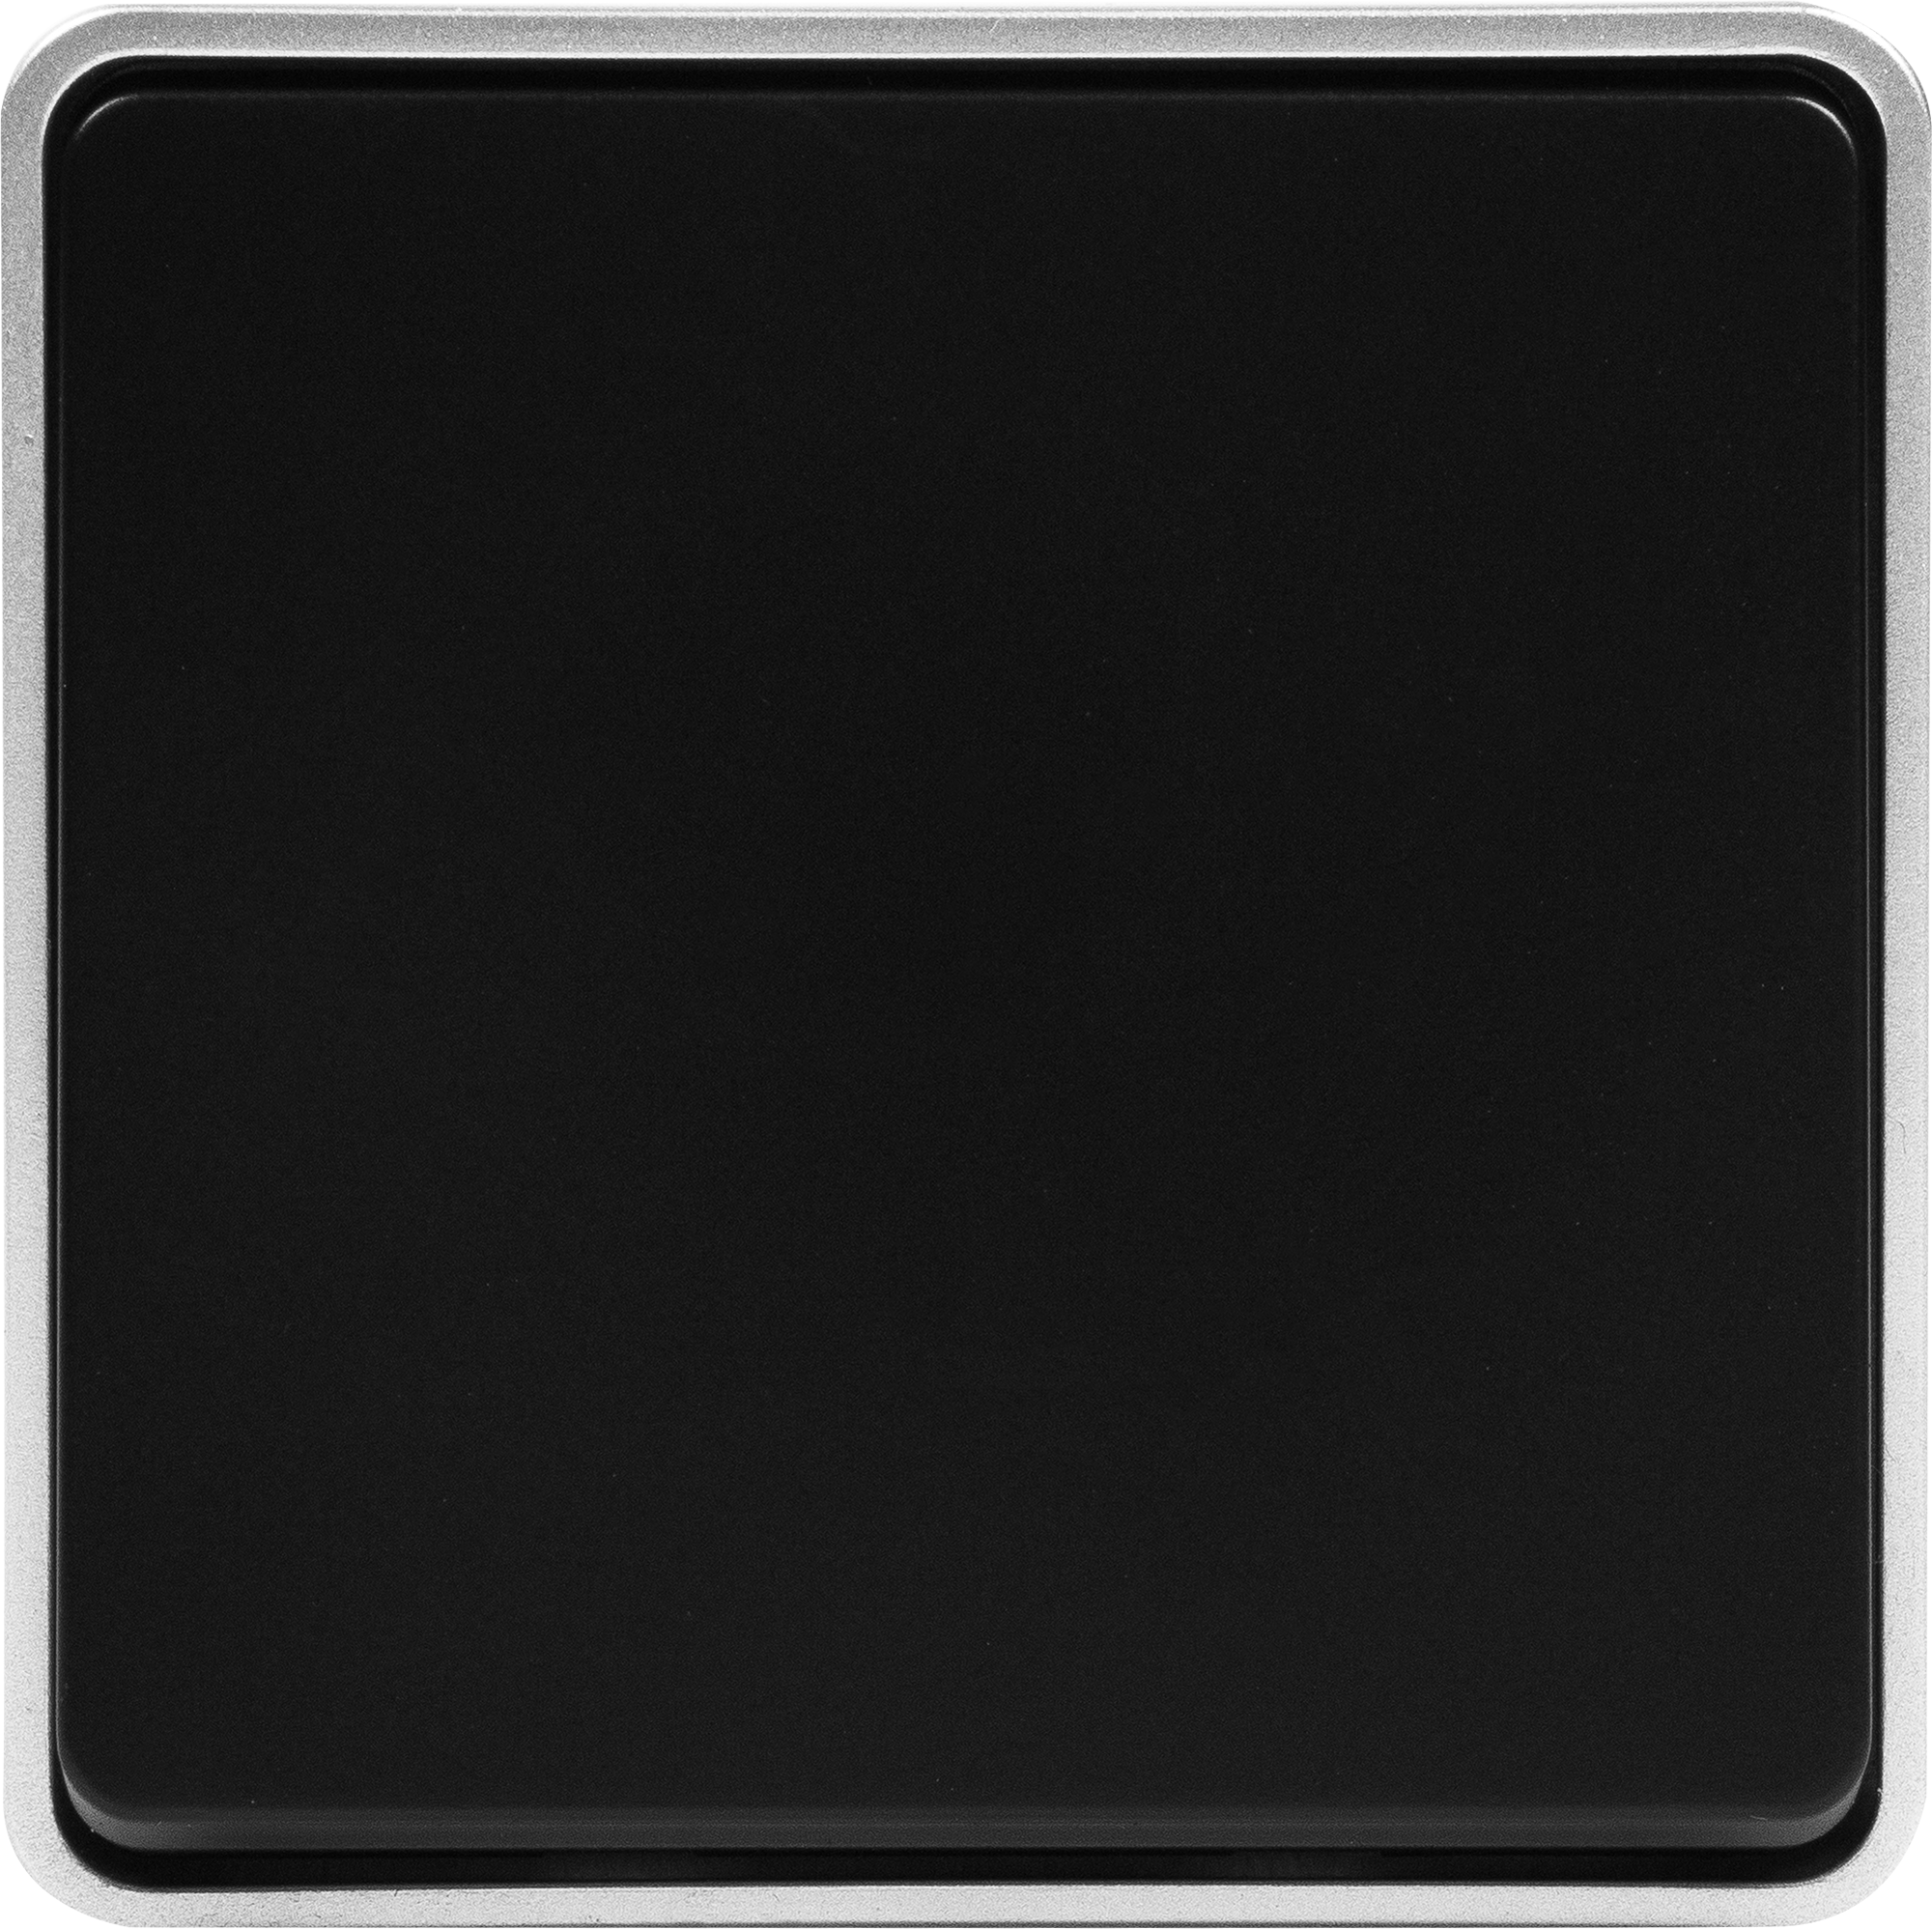 82063361 Выключатель накладной влагозащищённый 1 клавиша IP44 цвет чёрный с серебром Gallant STLM-0018554 WERKEL